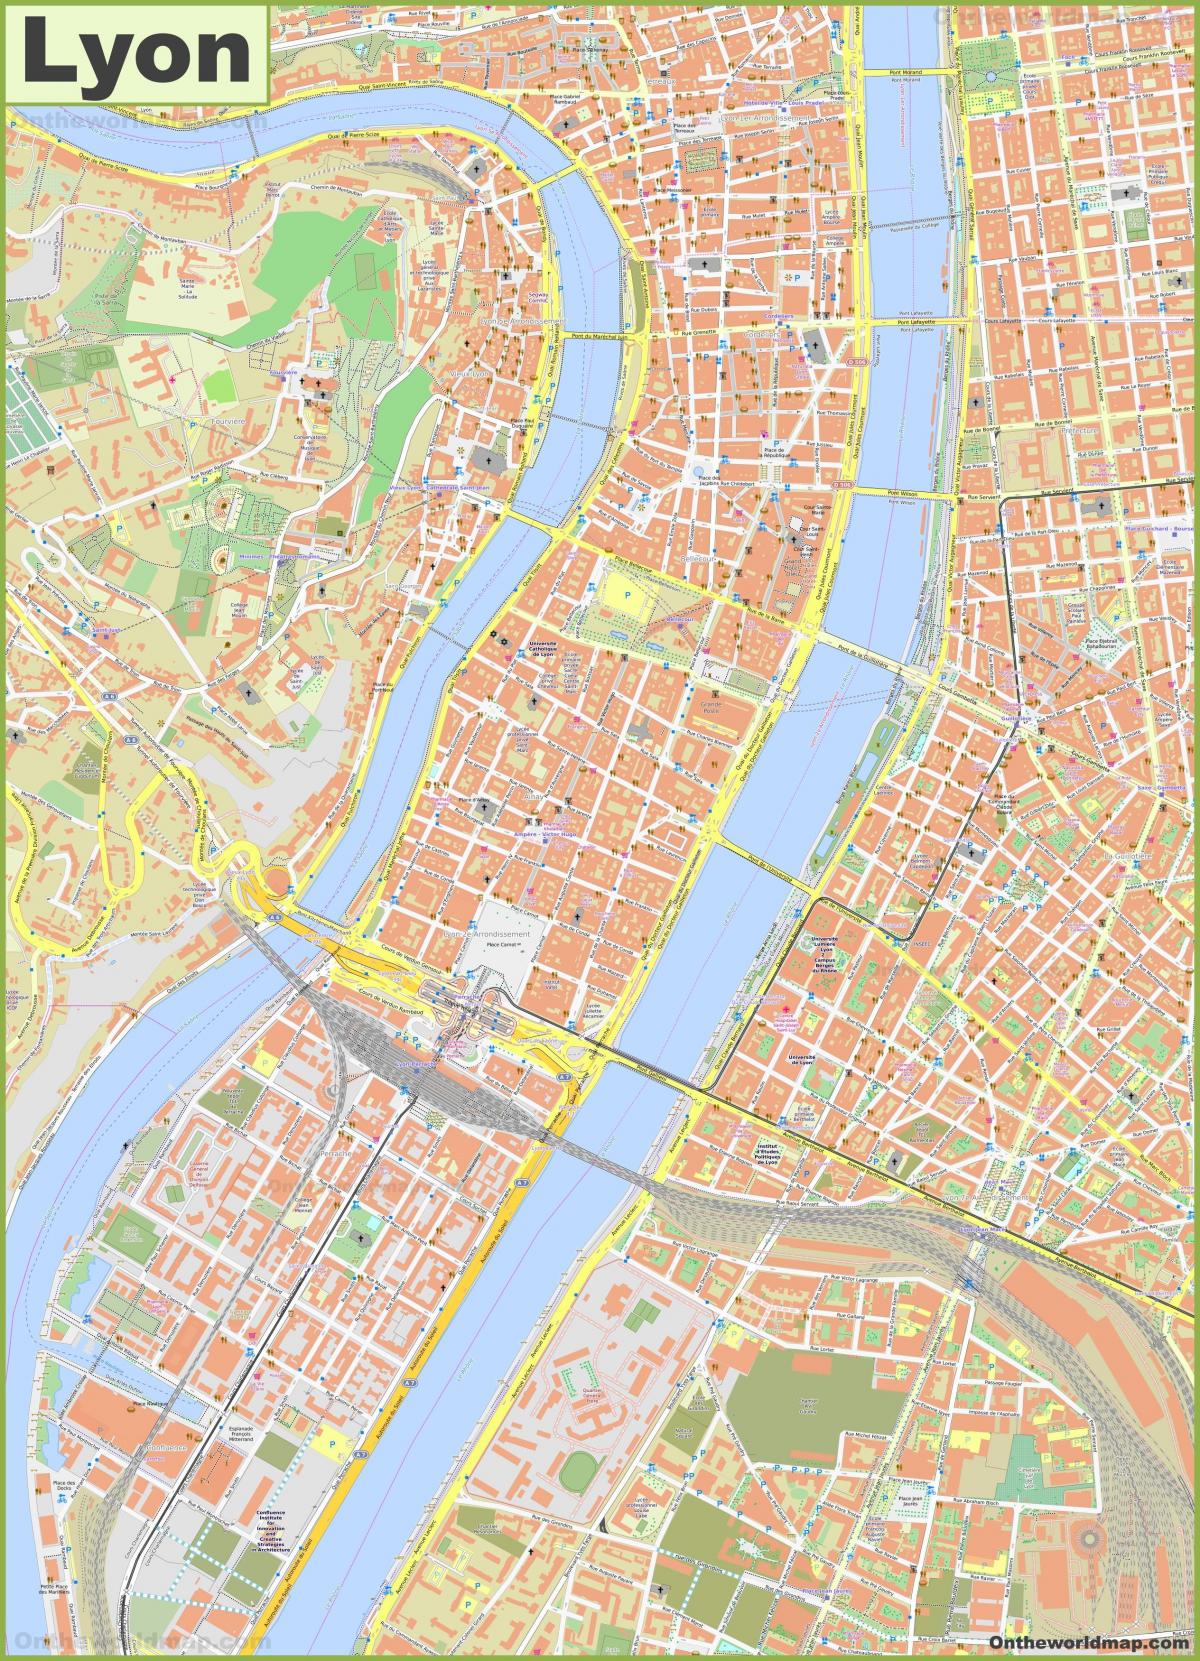 Lyon streets map